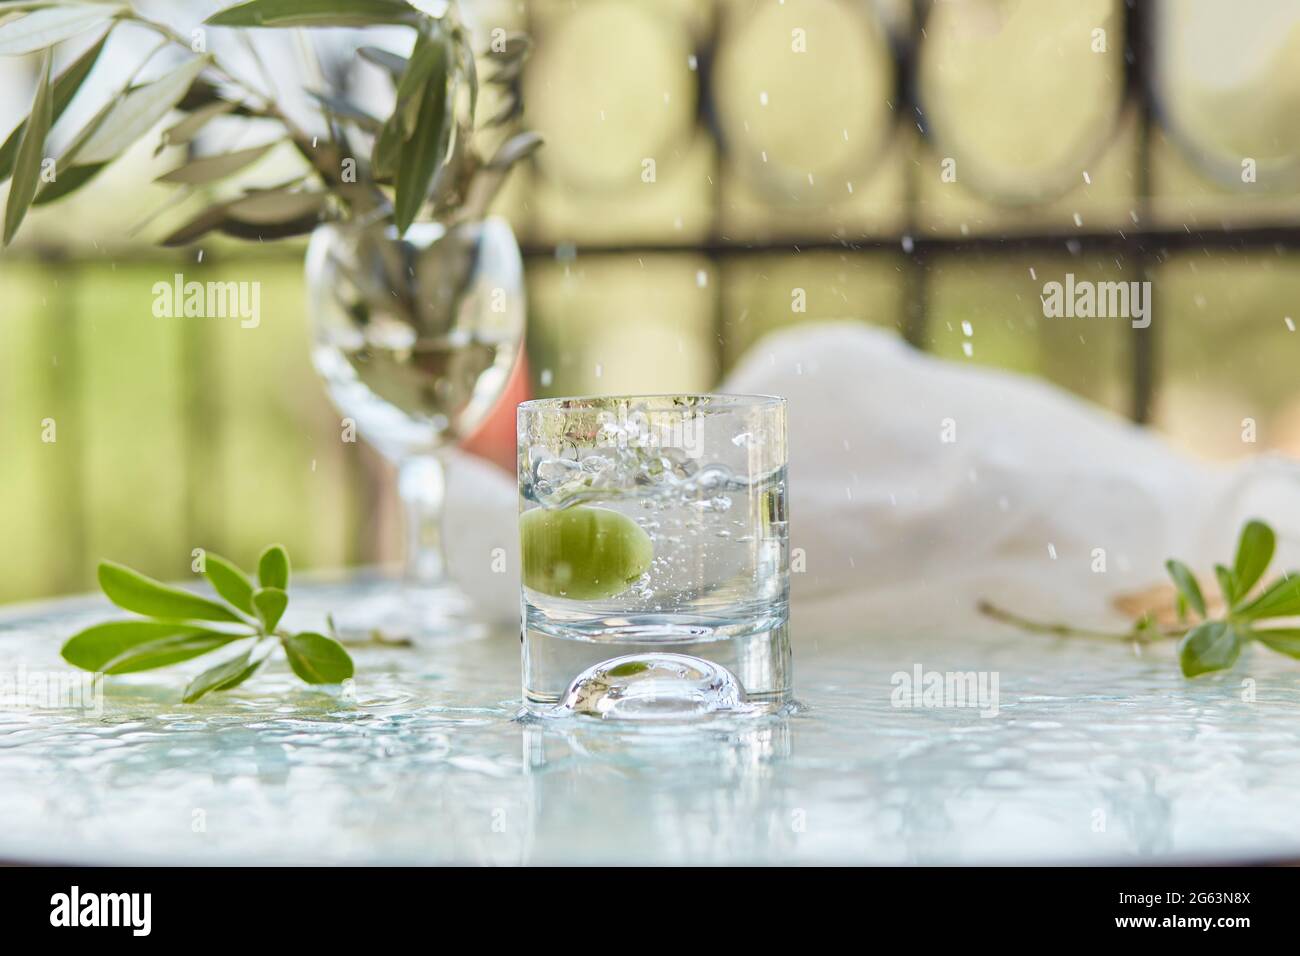 Sommer elegante Cocktails auf dem Hintergrund. Die dekorativen grünen Blätter blühen und der Zweig des Olivenbaums im Glas. Glyphe der Reinigung. Stockfoto